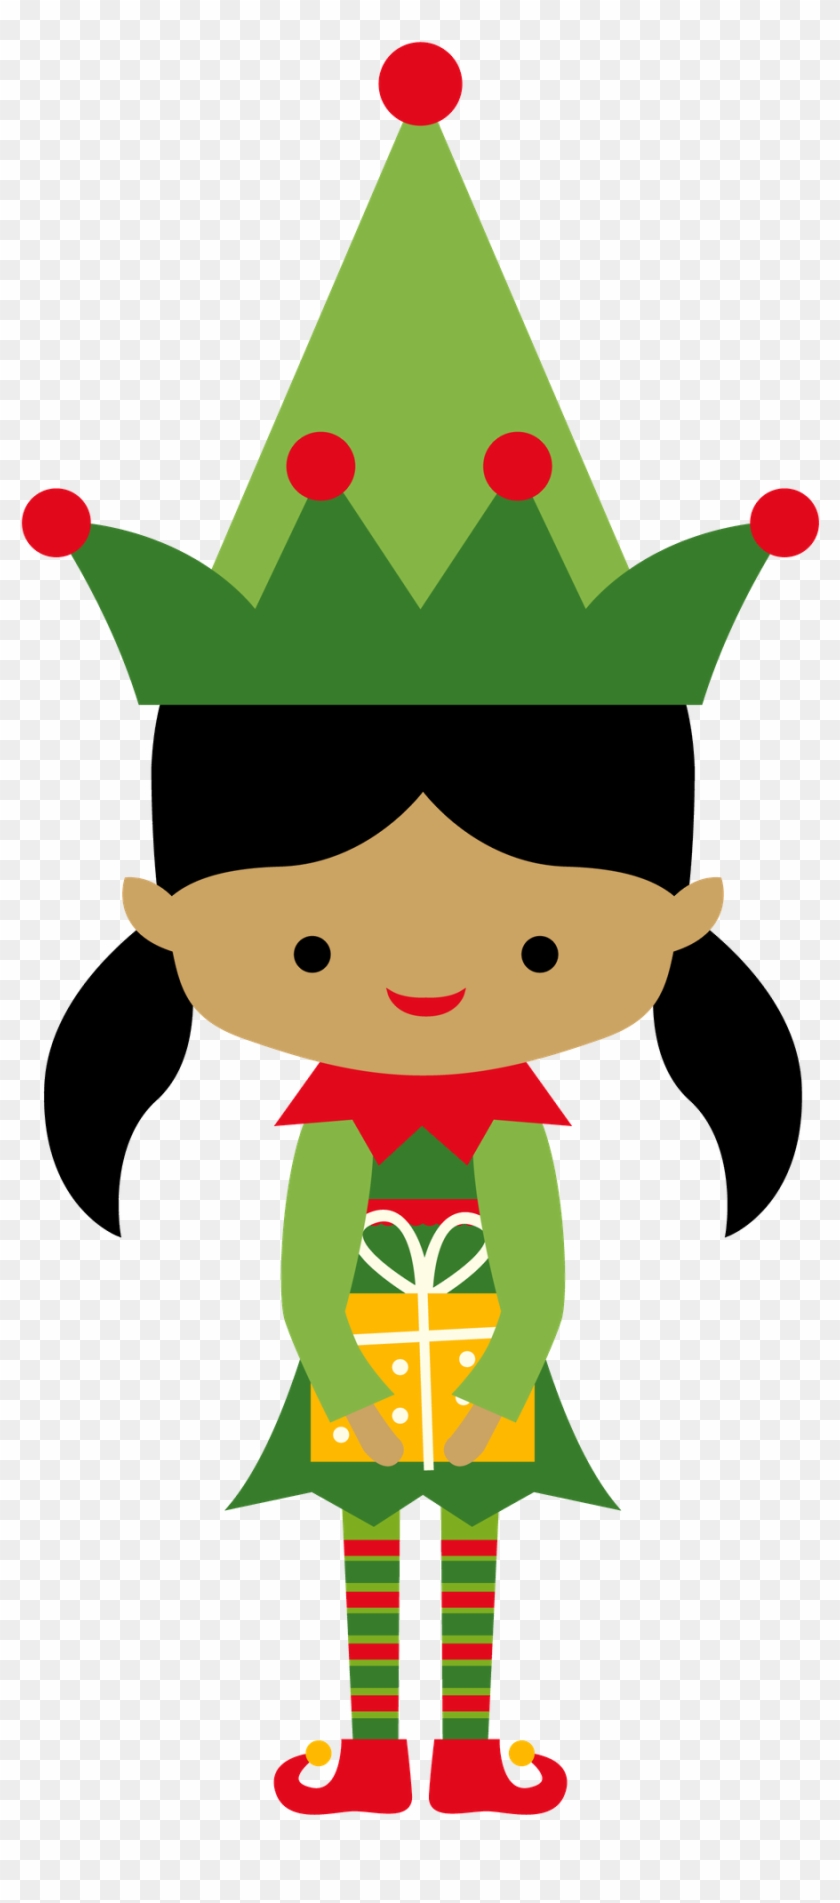 Christmas Girl Elf Clip Art - Christmas Girl Elves Clipart #316448